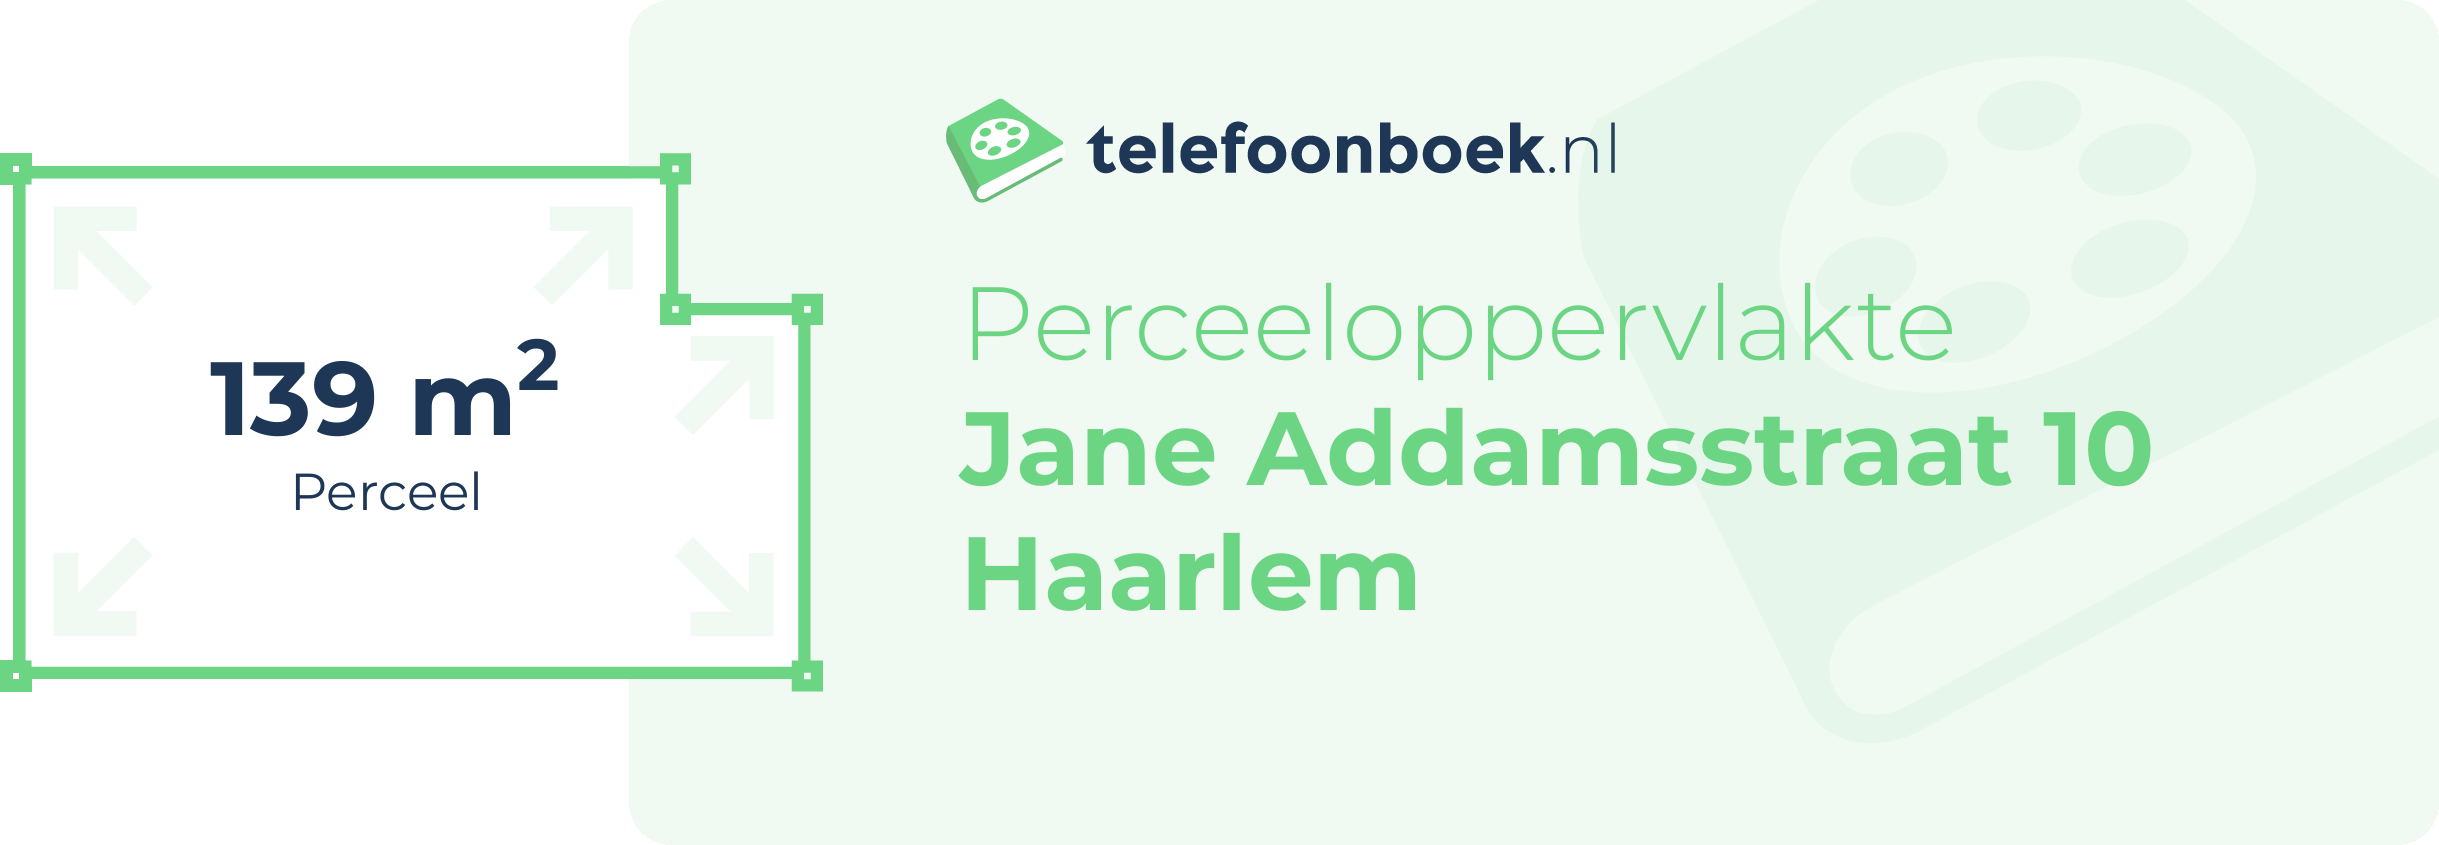 Perceeloppervlakte Jane Addamsstraat 10 Haarlem